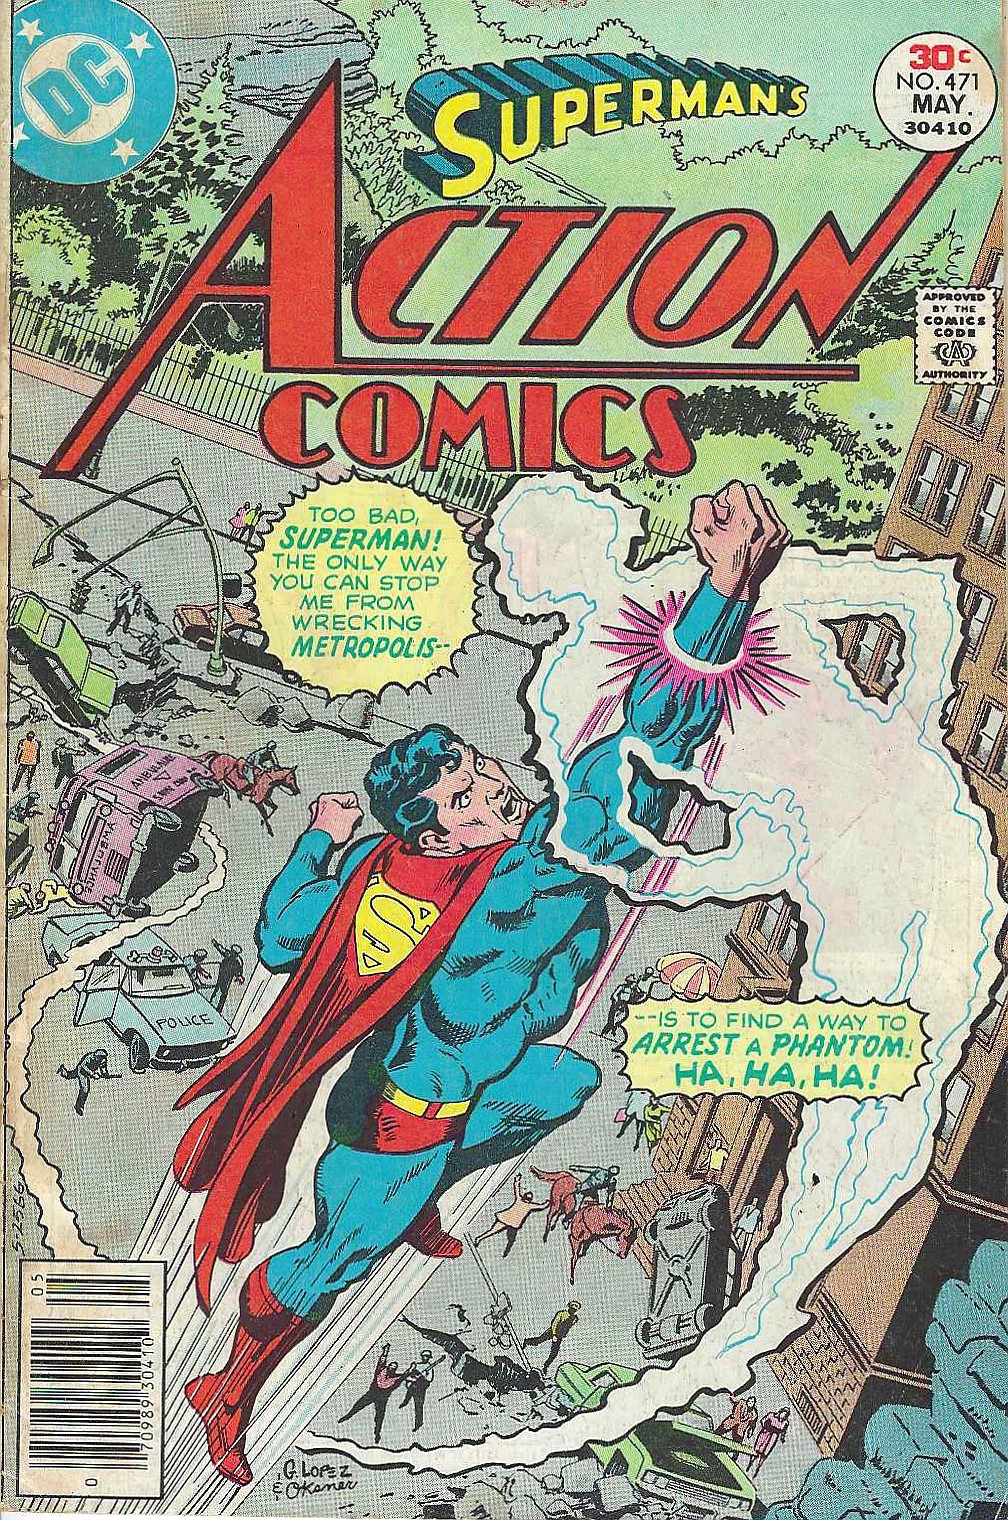 Action Comics #471 G/Vg First Apperance of Foara